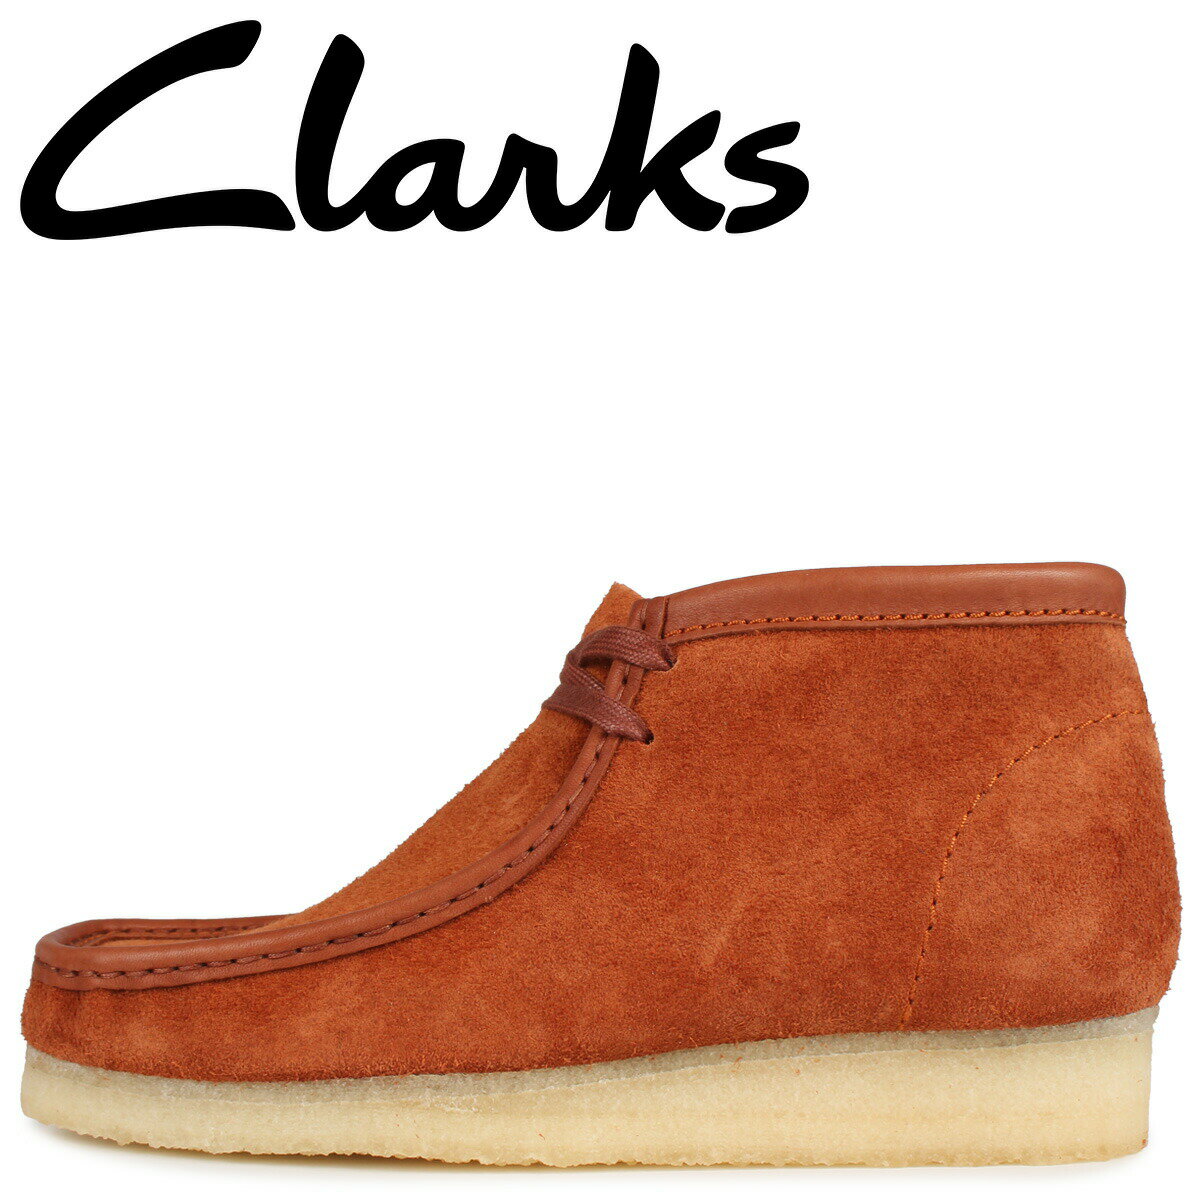 Clarks WALLABEE BOOT クラークス ワラビー ブーツ メンズ ブラウン 26154818